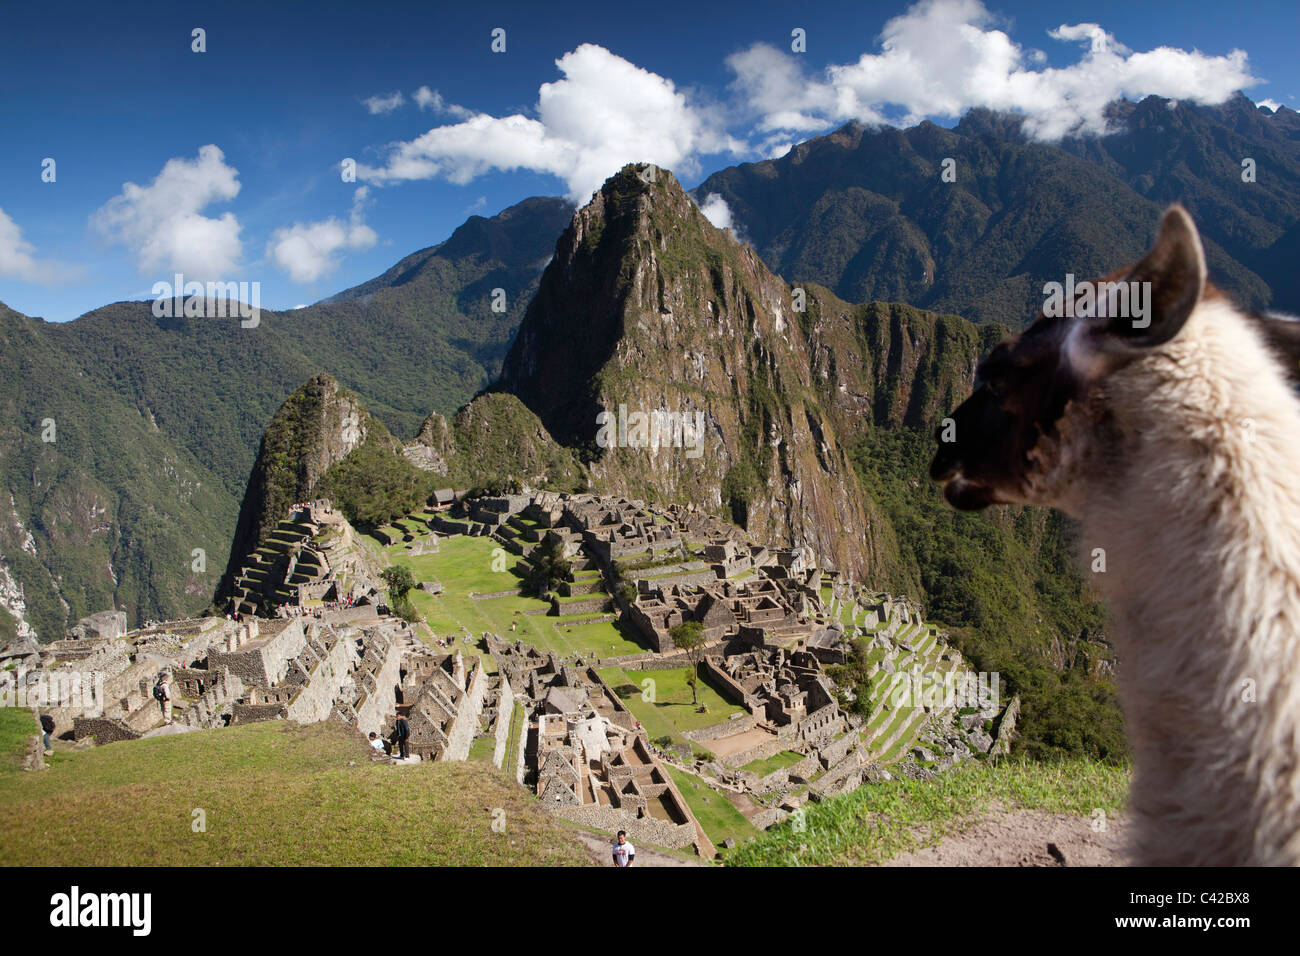 Il Perù, del XV secolo sito Inca situato a 2.430 metri (7,970 ft) sopra il livello del mare. Llama. (Lama glama). Foto Stock